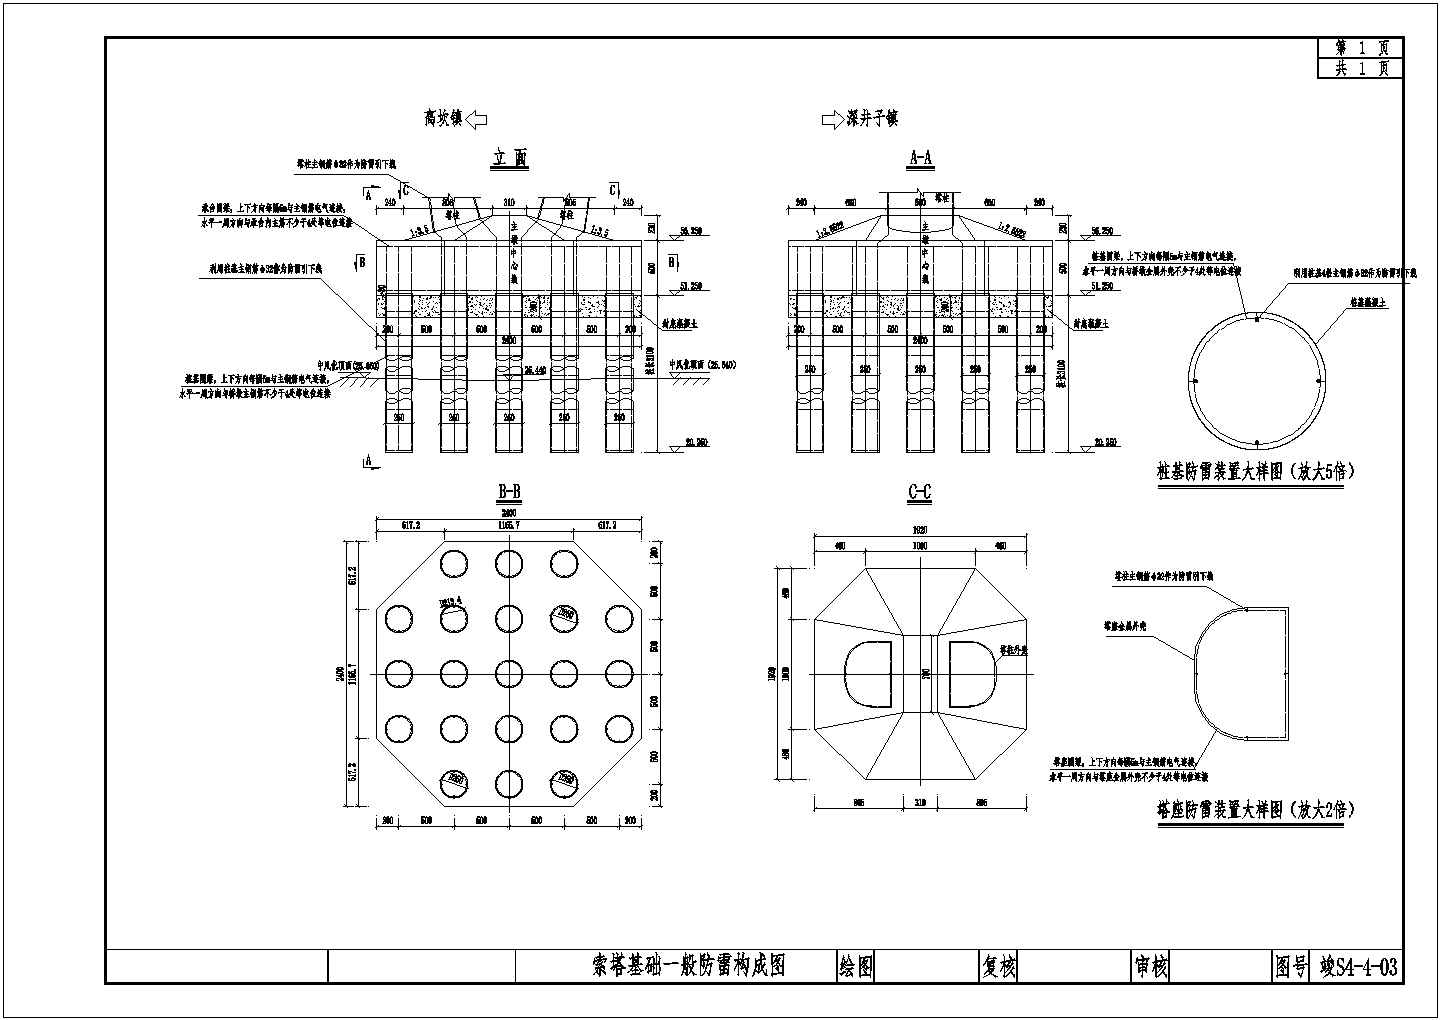 精致斜拉桥工程防雷设施设计施工图